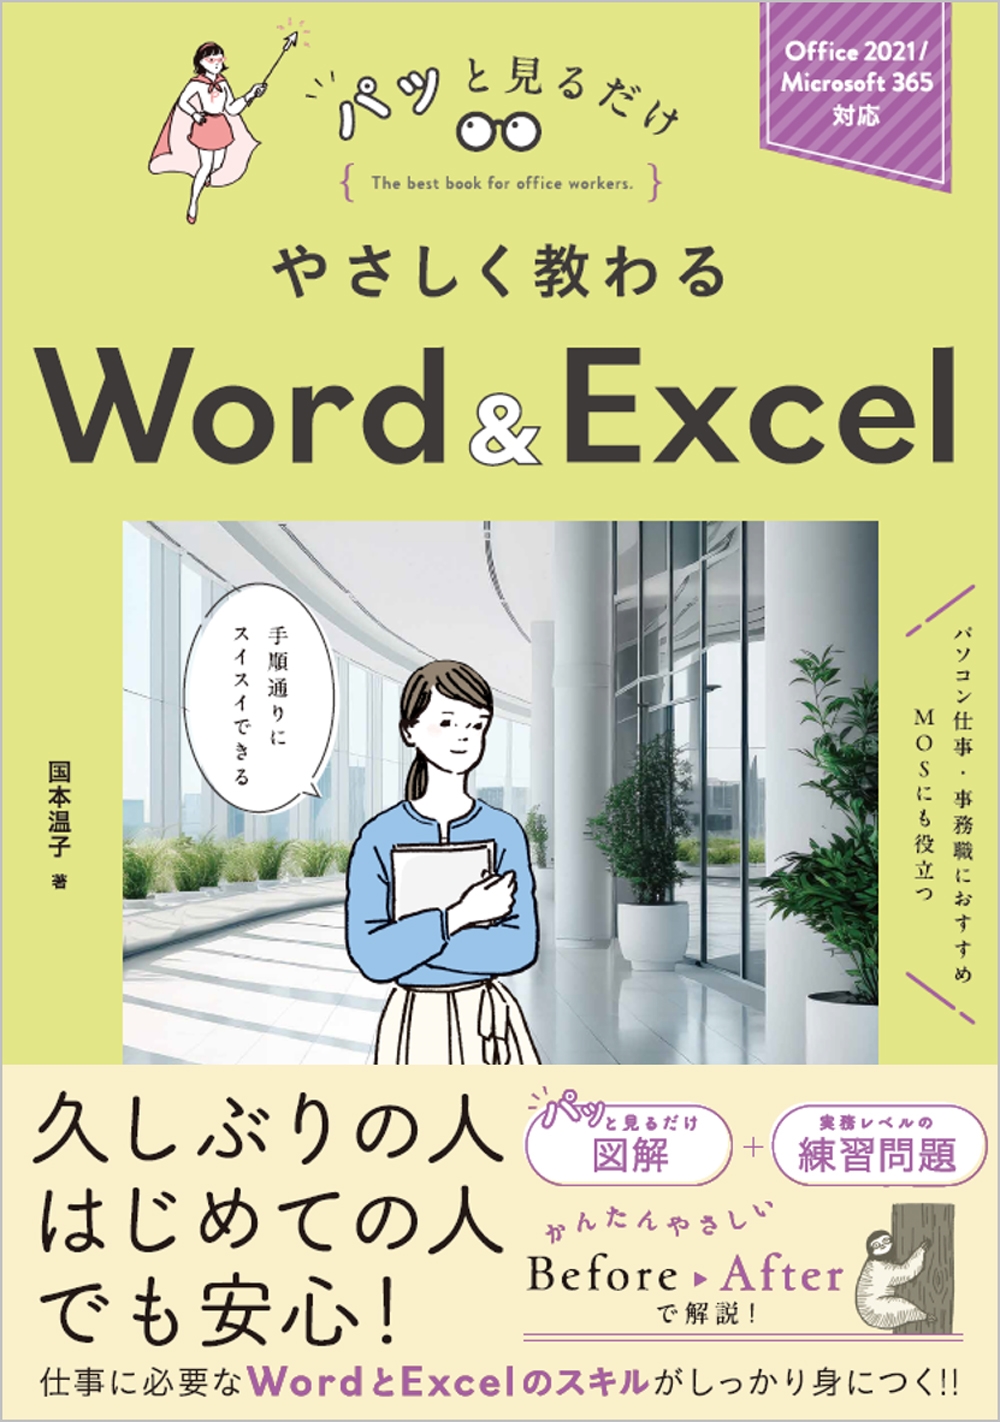 国本温子/やさしく教わる Word & Excel [Office 2021/Microsoft 365対応]